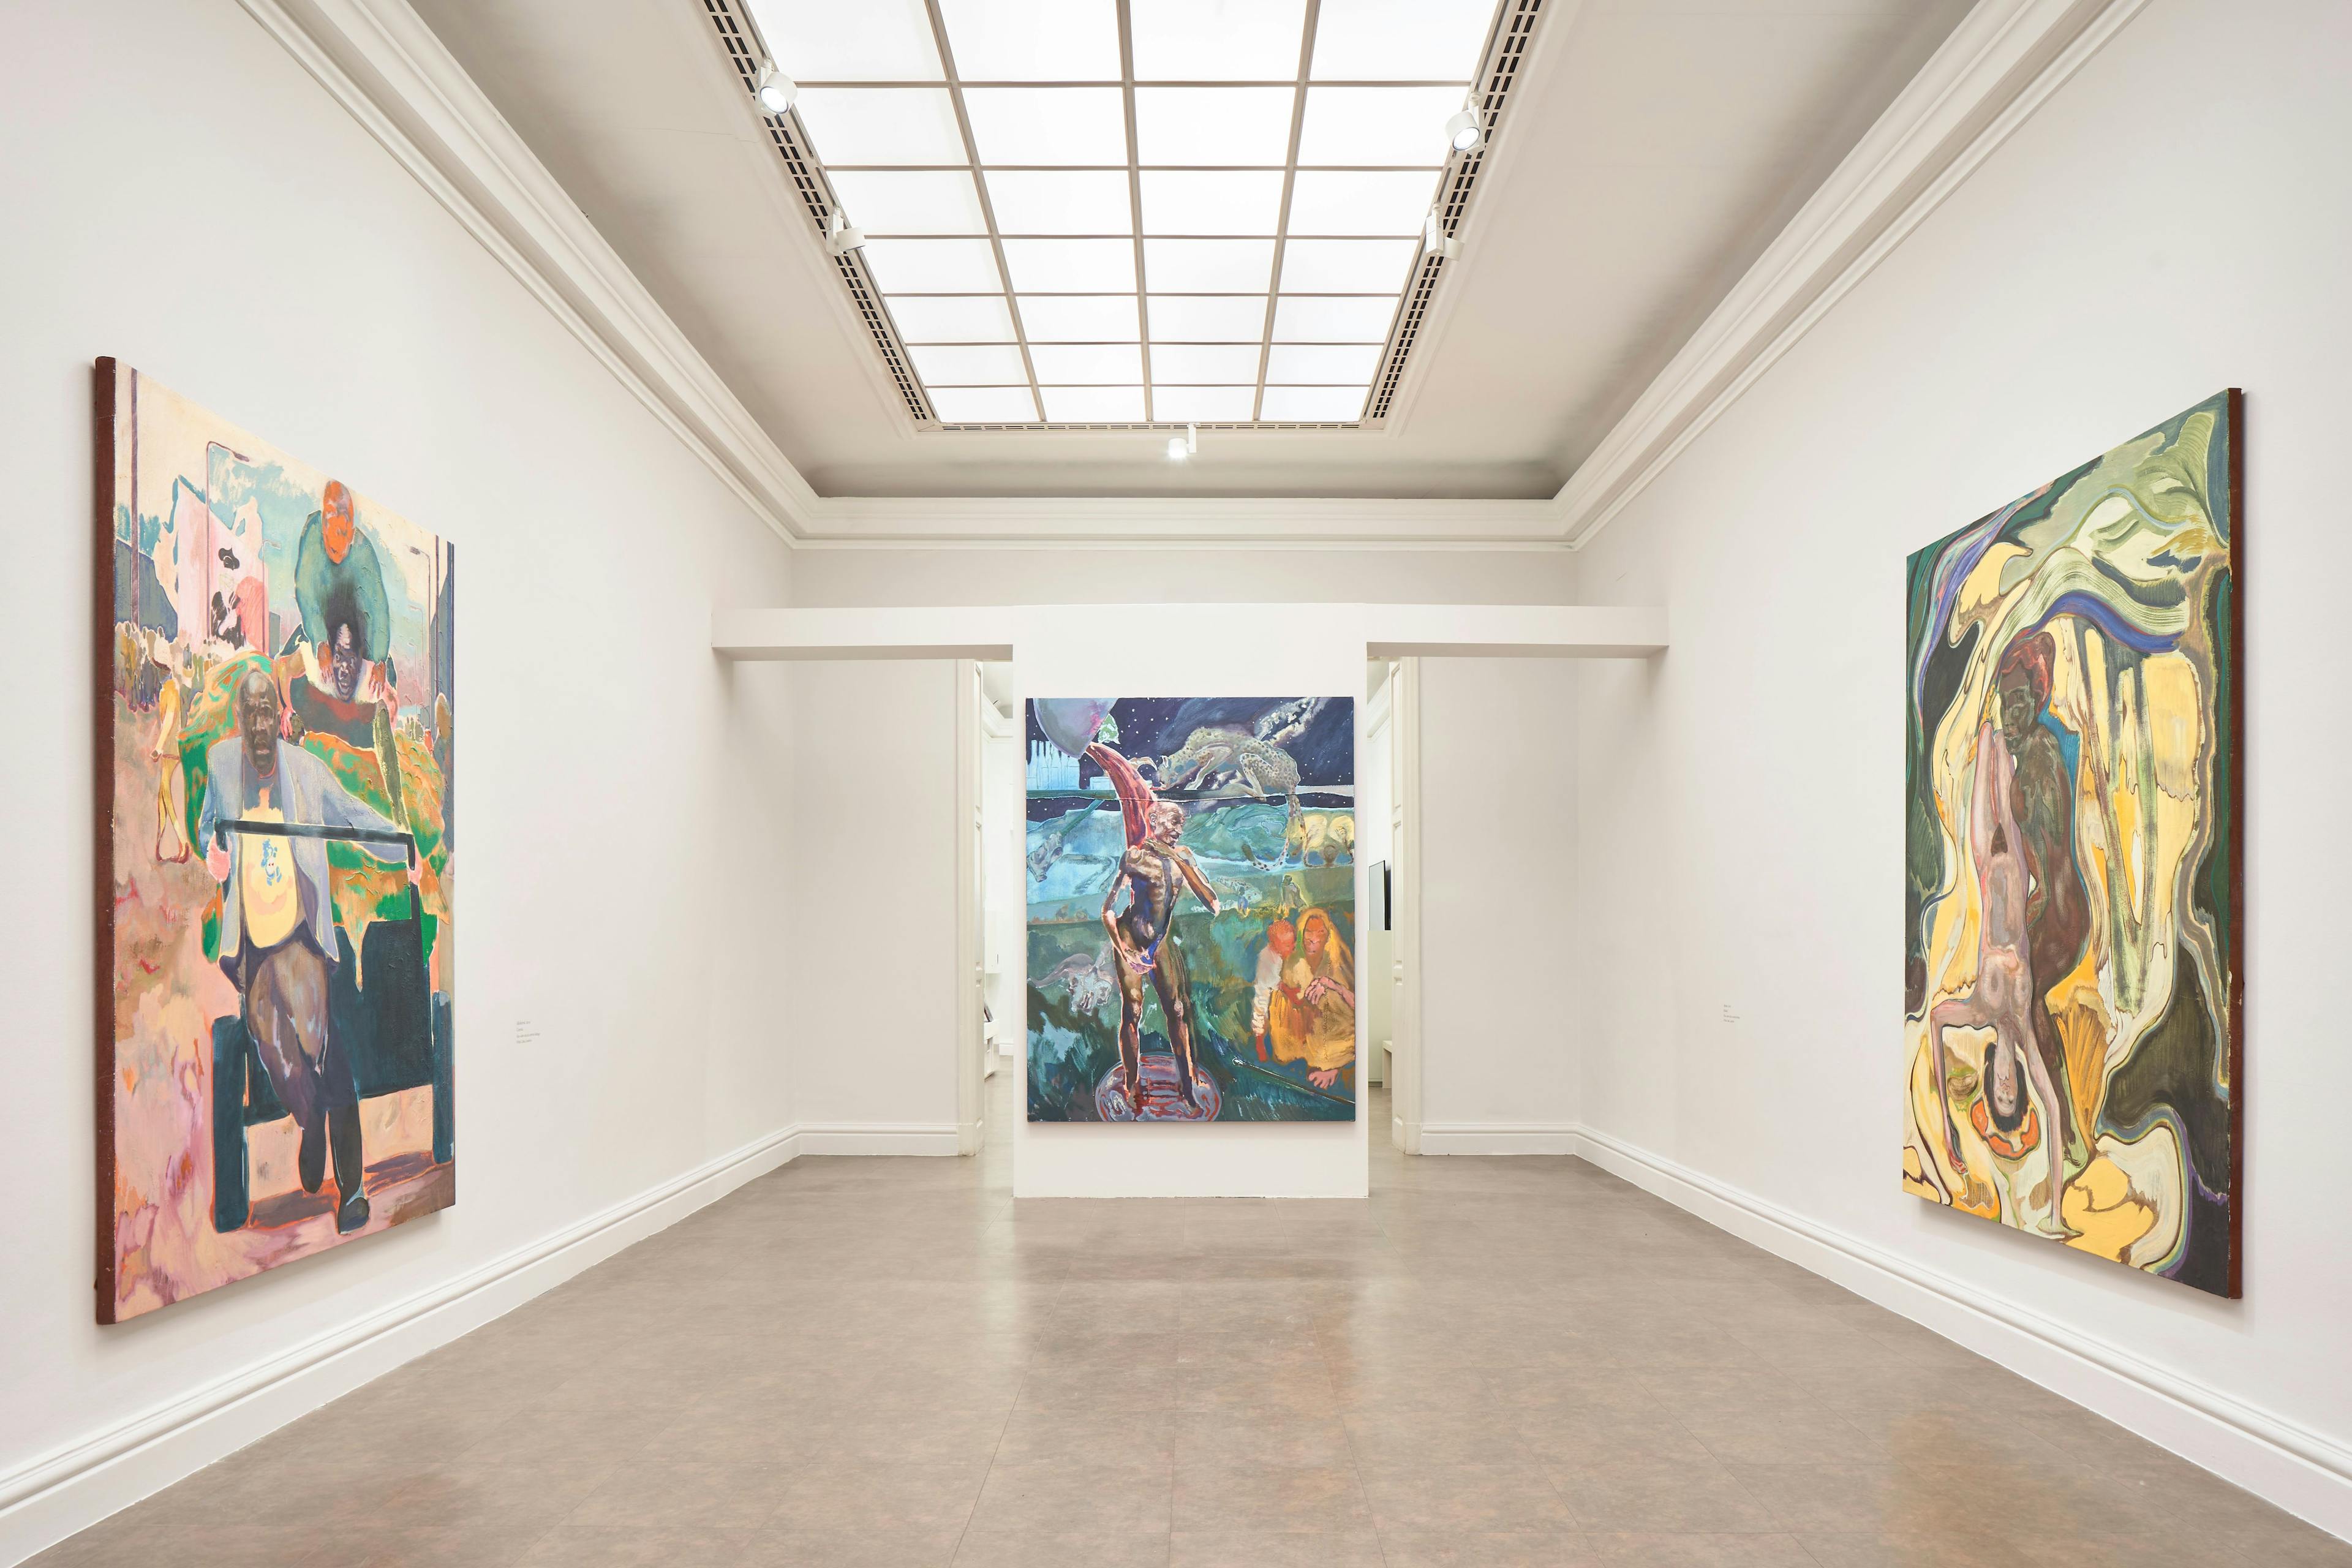 Installation view of the exhibition, Michael Armitage, at Real Academia de Bellas Artes de San Fernando in Madrid, dated 2022.